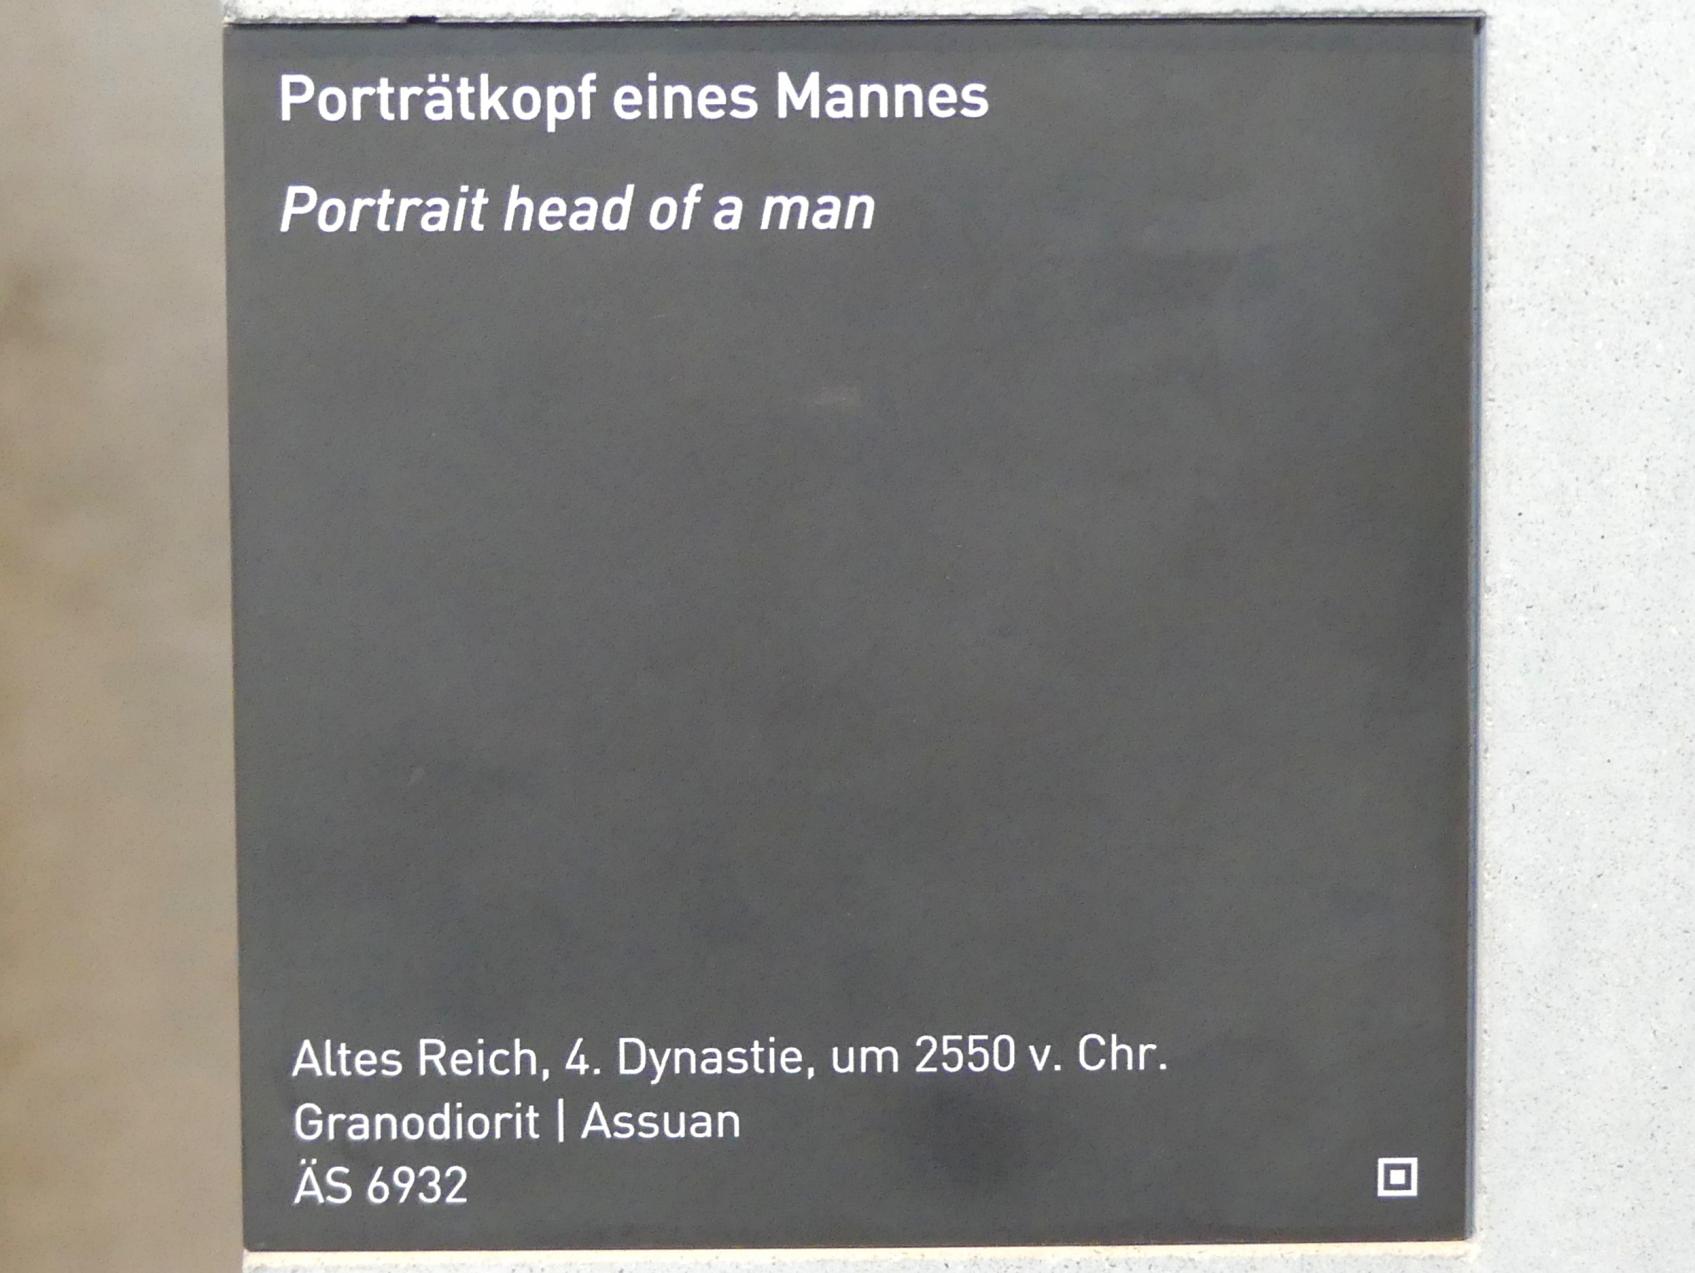 Porträtkopf eines Mannes, 4. Dynastie, Undatiert, 2500 v. Chr., Bild 4/4